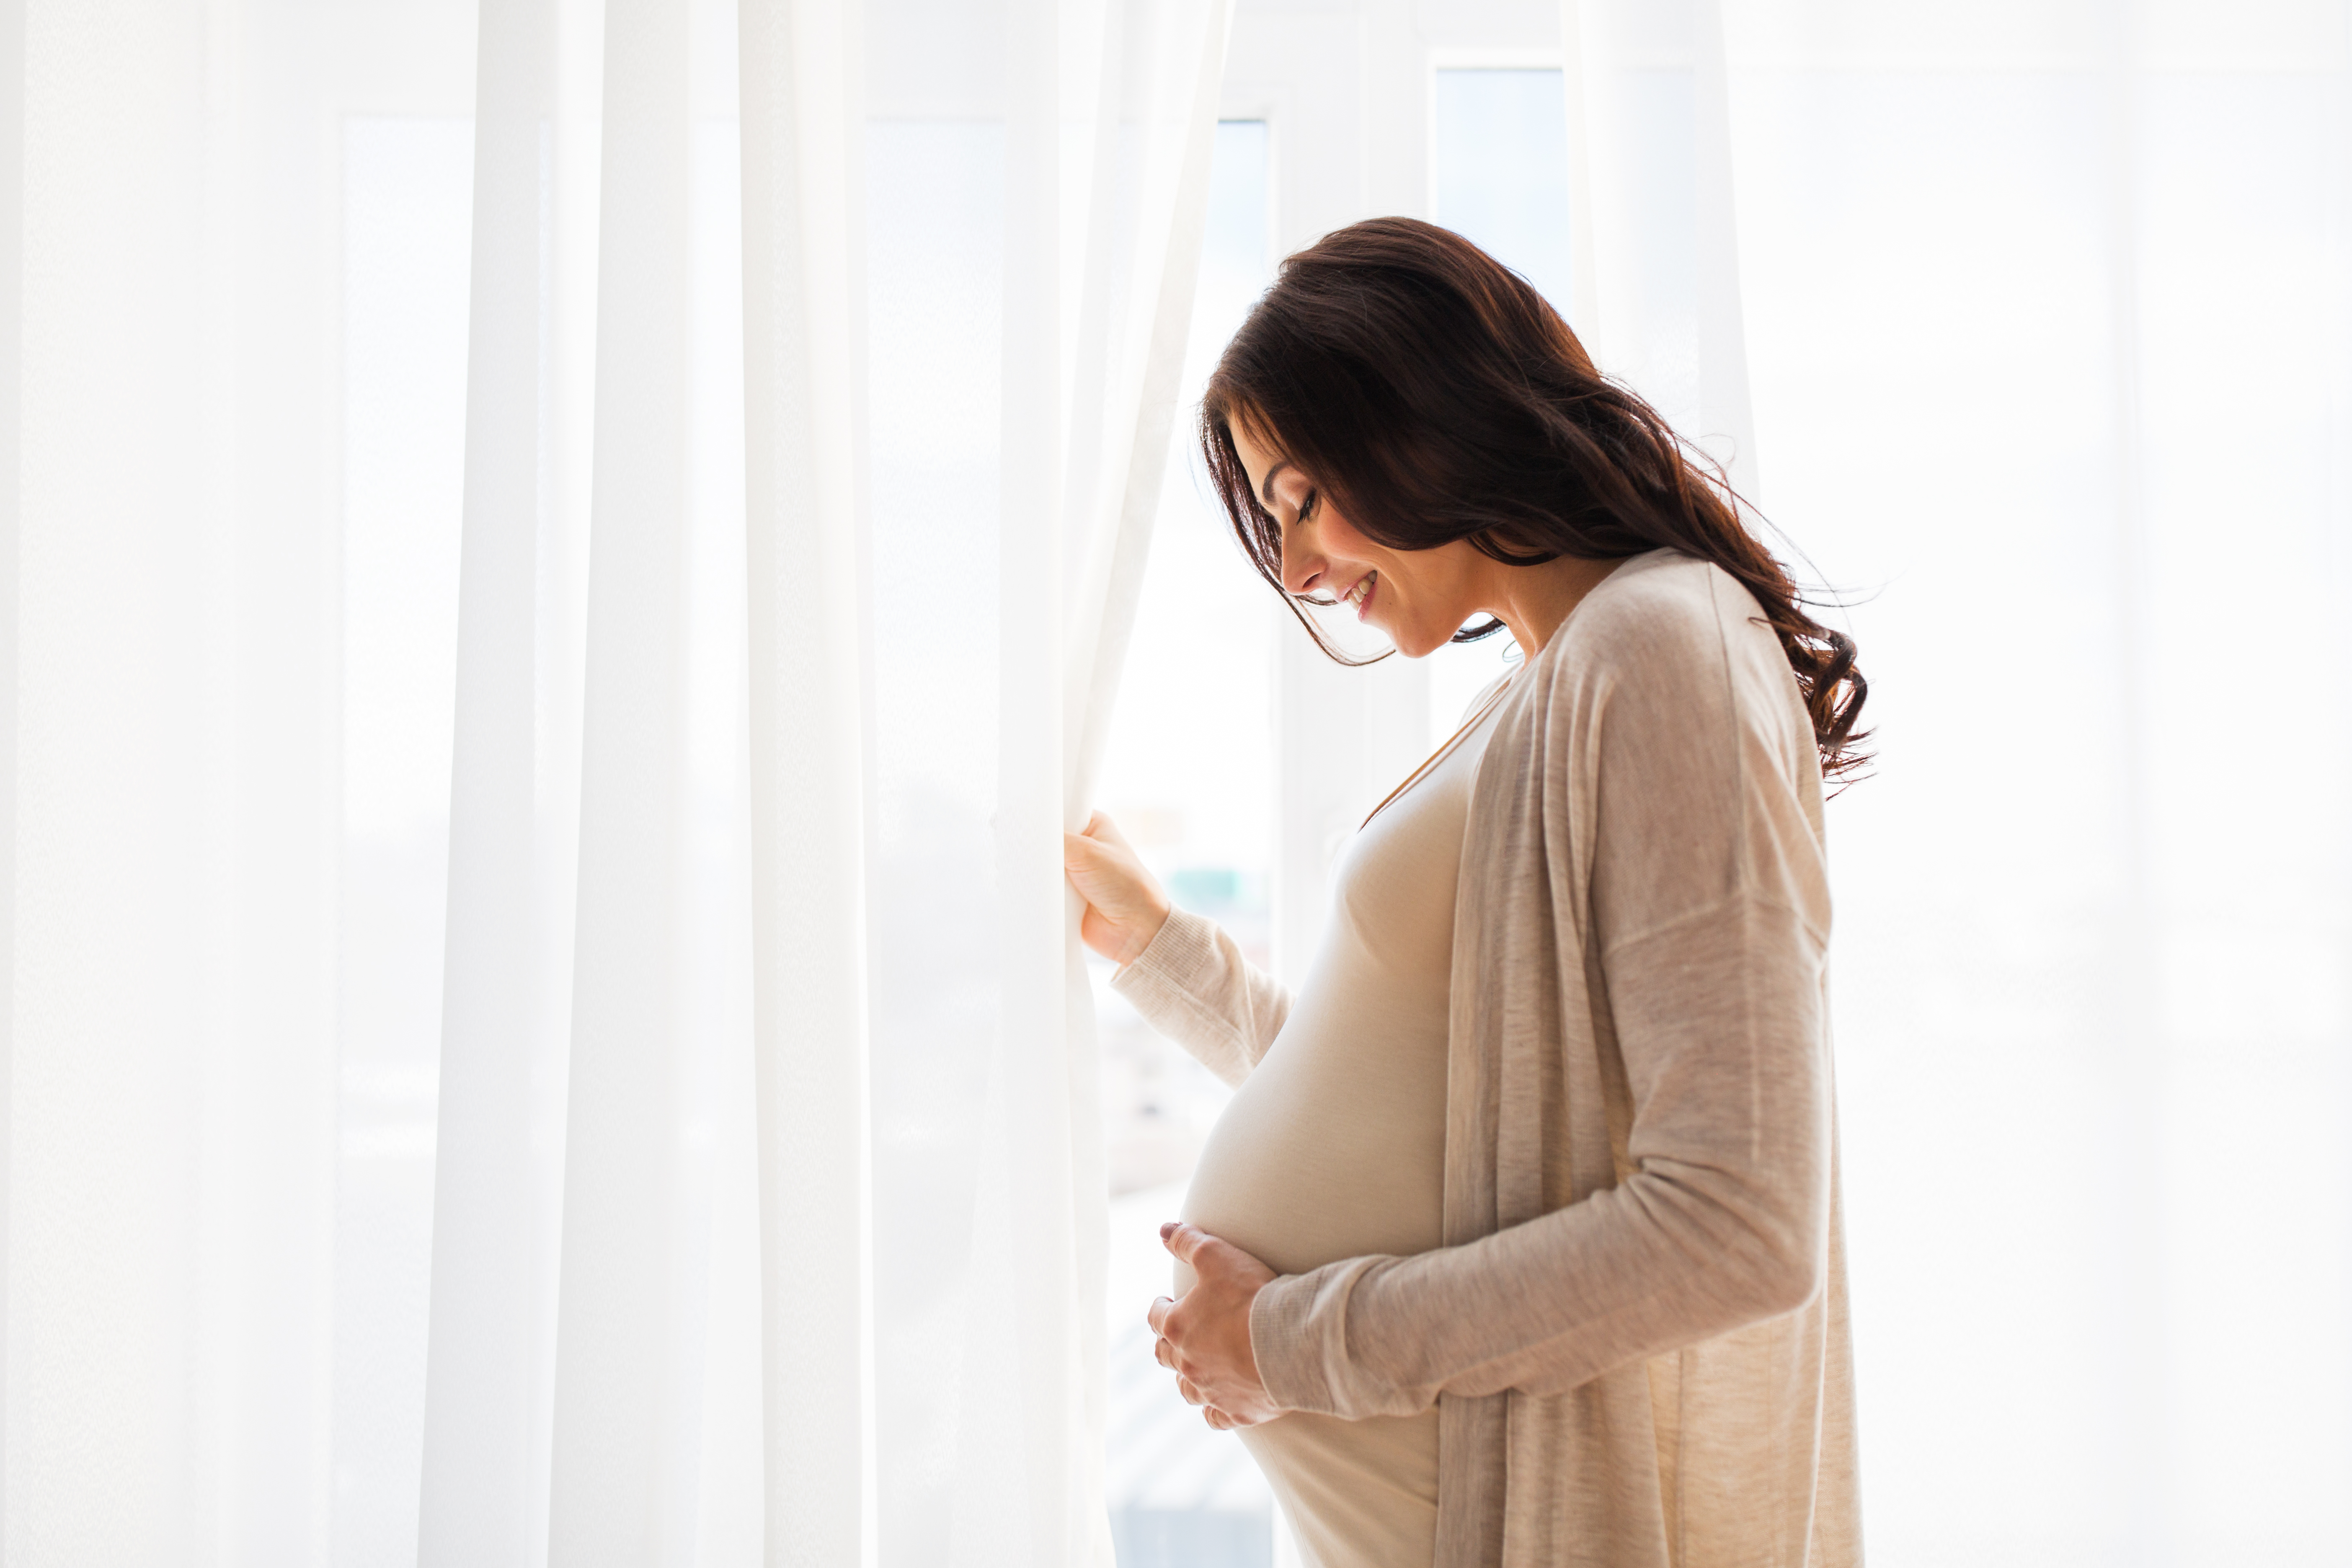 Une femme enceinte debout près d'une fenêtre | Source : Shutterstock